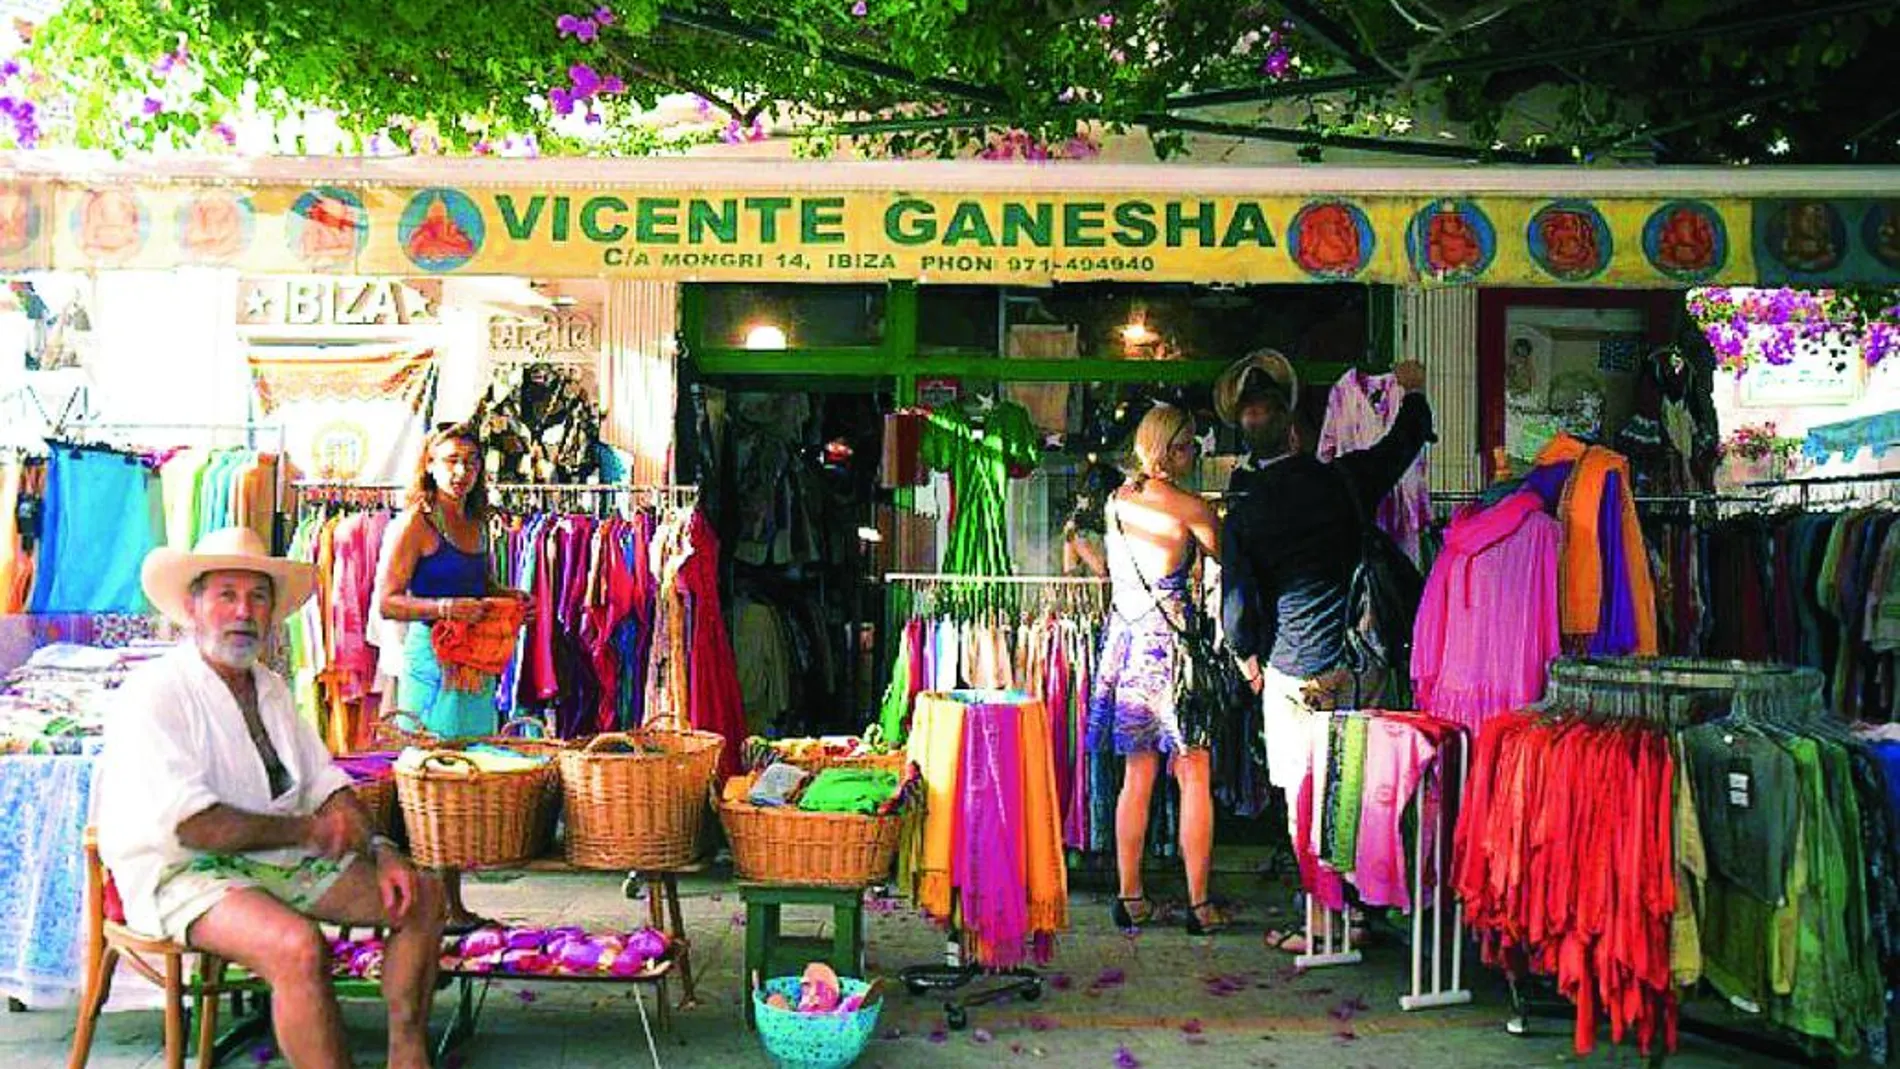 Vicente Ganesha, fotografiado frente a su tienda por el artista Diego Portuondo.